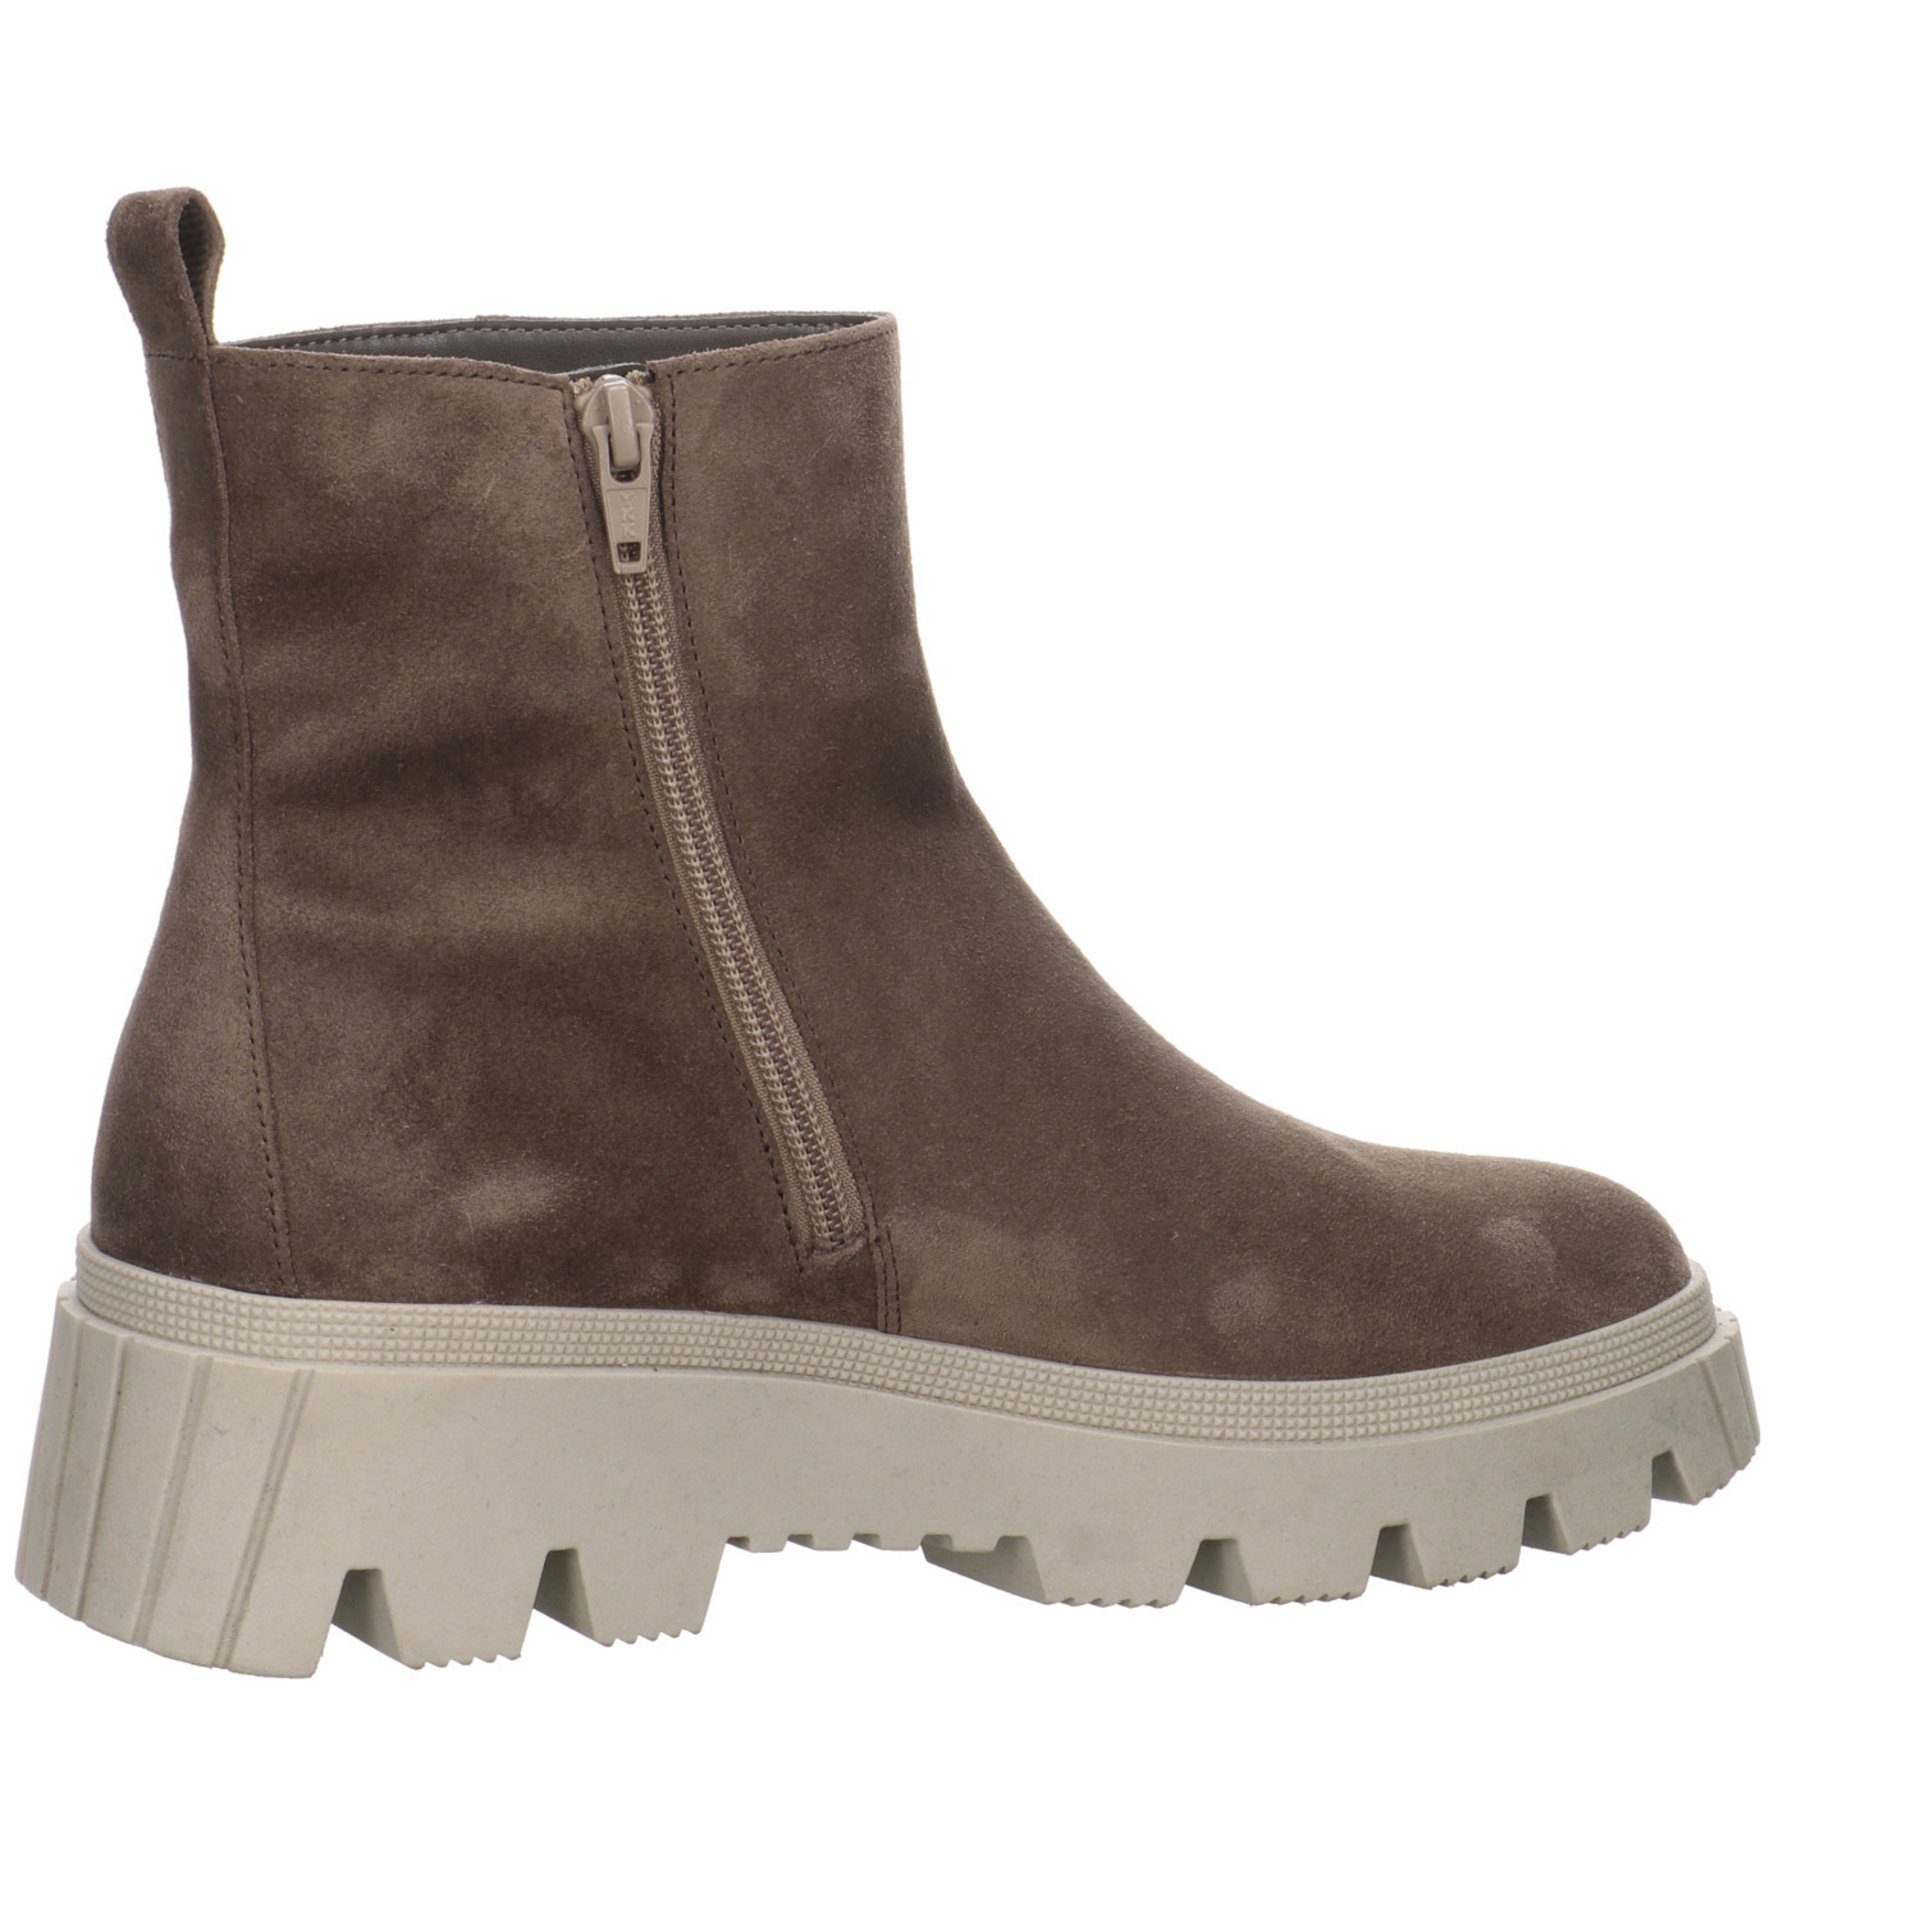 Gabor Boots (dust) Stiefel mohair Elegant Schuhe Freizeit Stiefel Damen Veloursleder